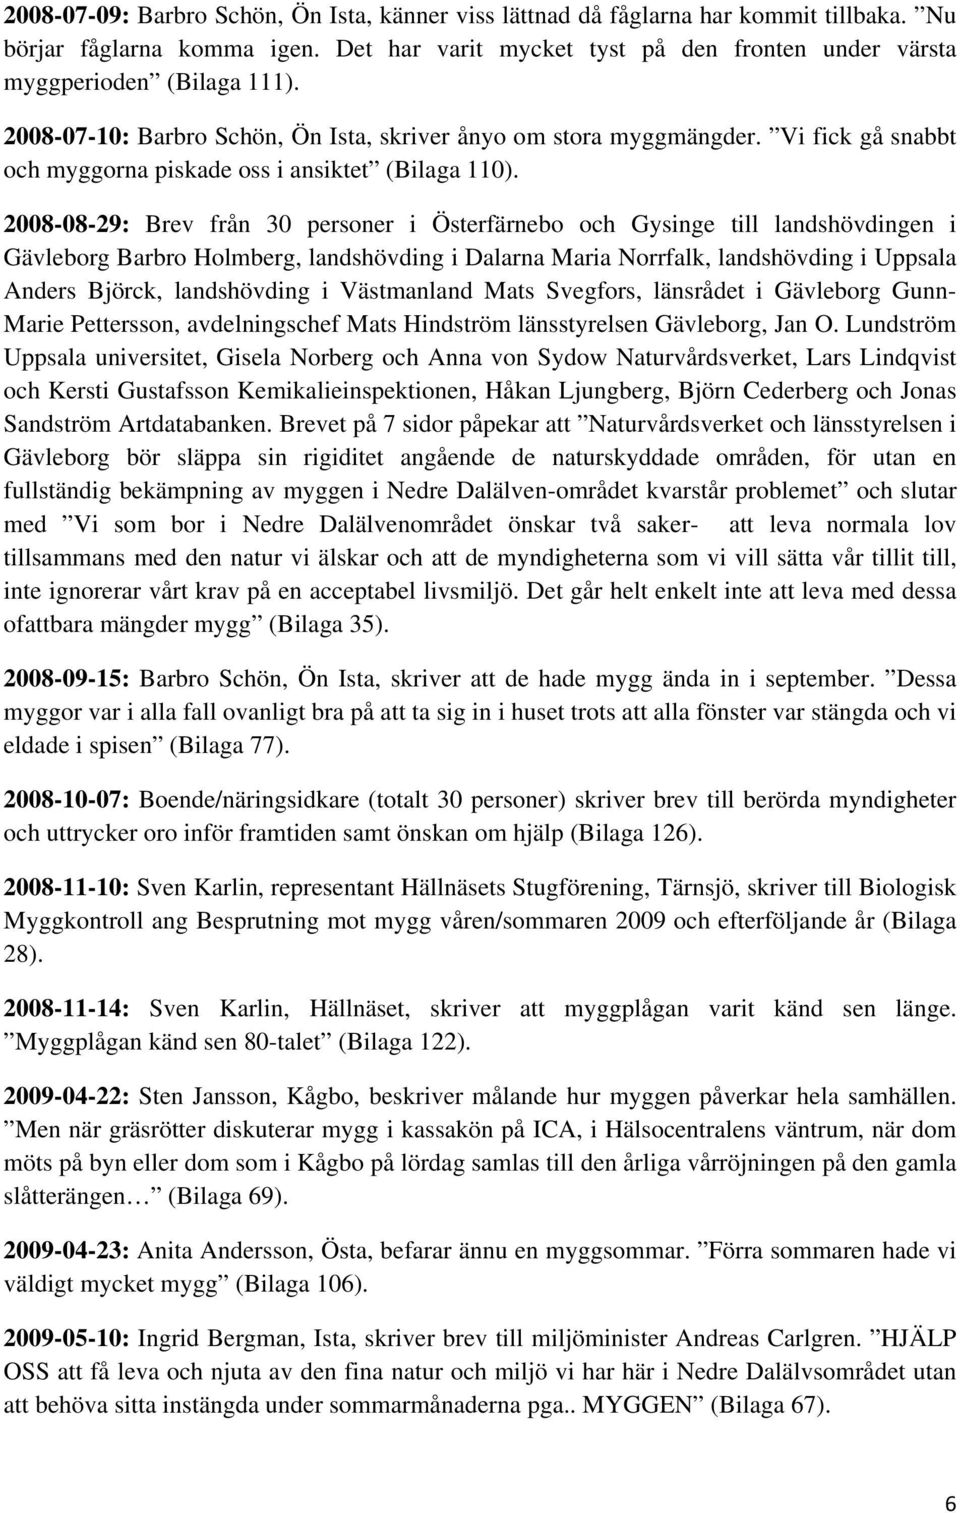 2008-08-29: Brev från 30 personer i Österfärnebo och Gysinge till landshövdingen i Gävleborg Barbro Holmberg, landshövding i Dalarna Maria Norrfalk, landshövding i Uppsala Anders Björck, landshövding